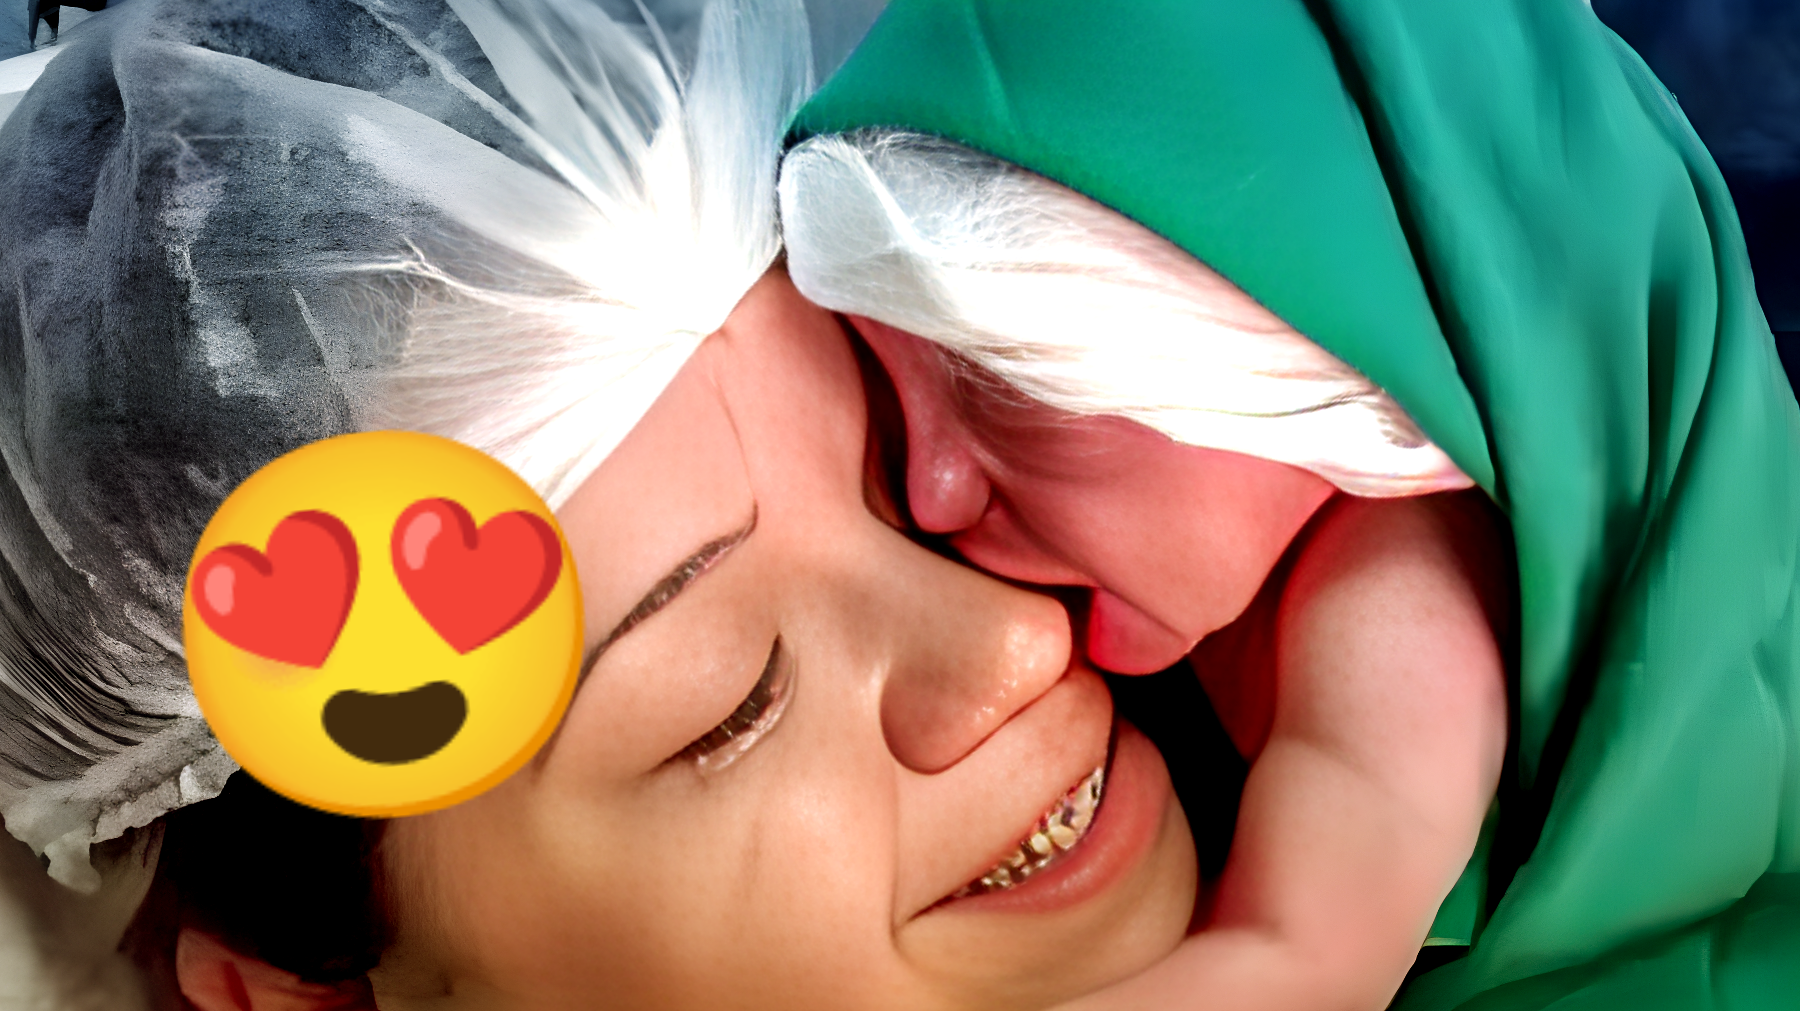 Il video commovente: la neonata abbraccia il volto della mamma subito dopo il parto